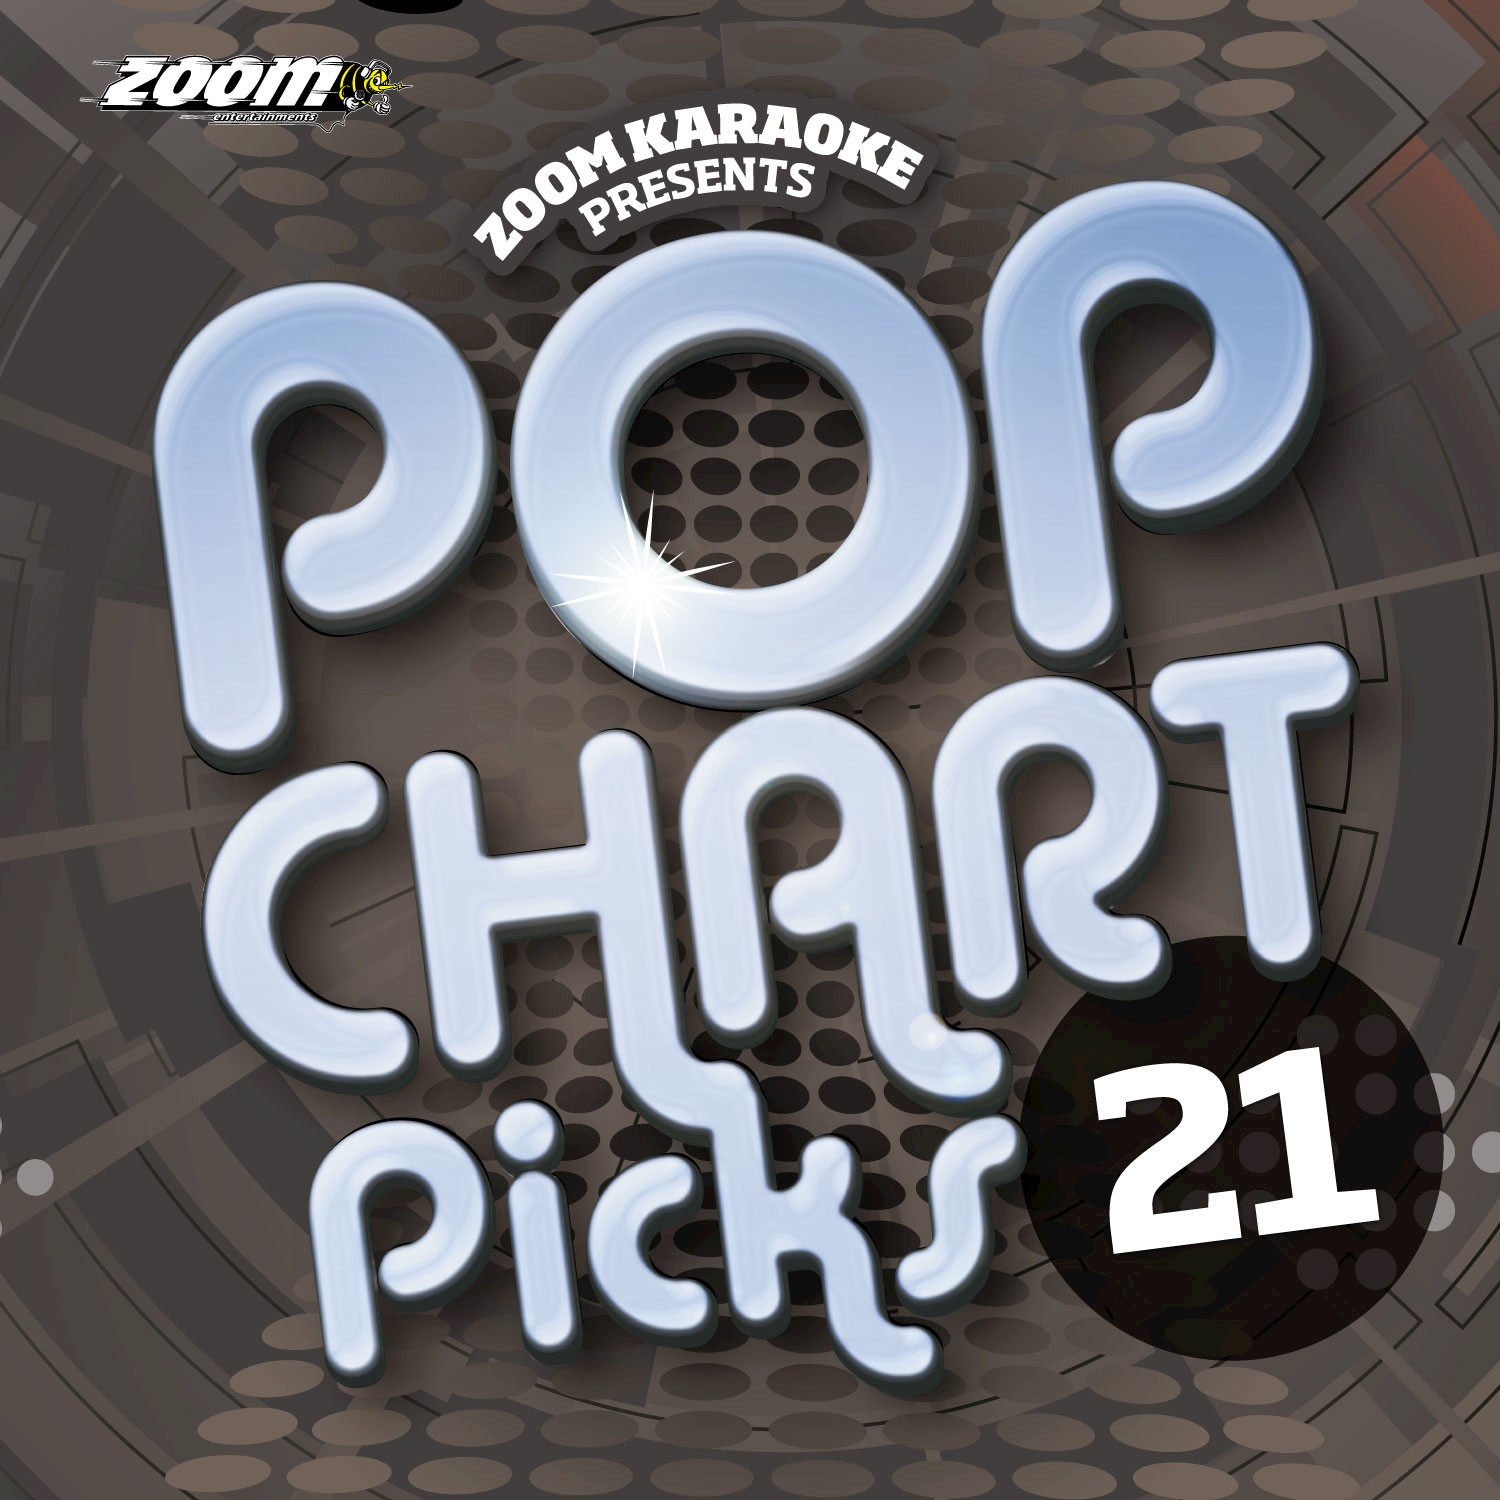 Zoom Karaoke: Pop Chart Picks 21